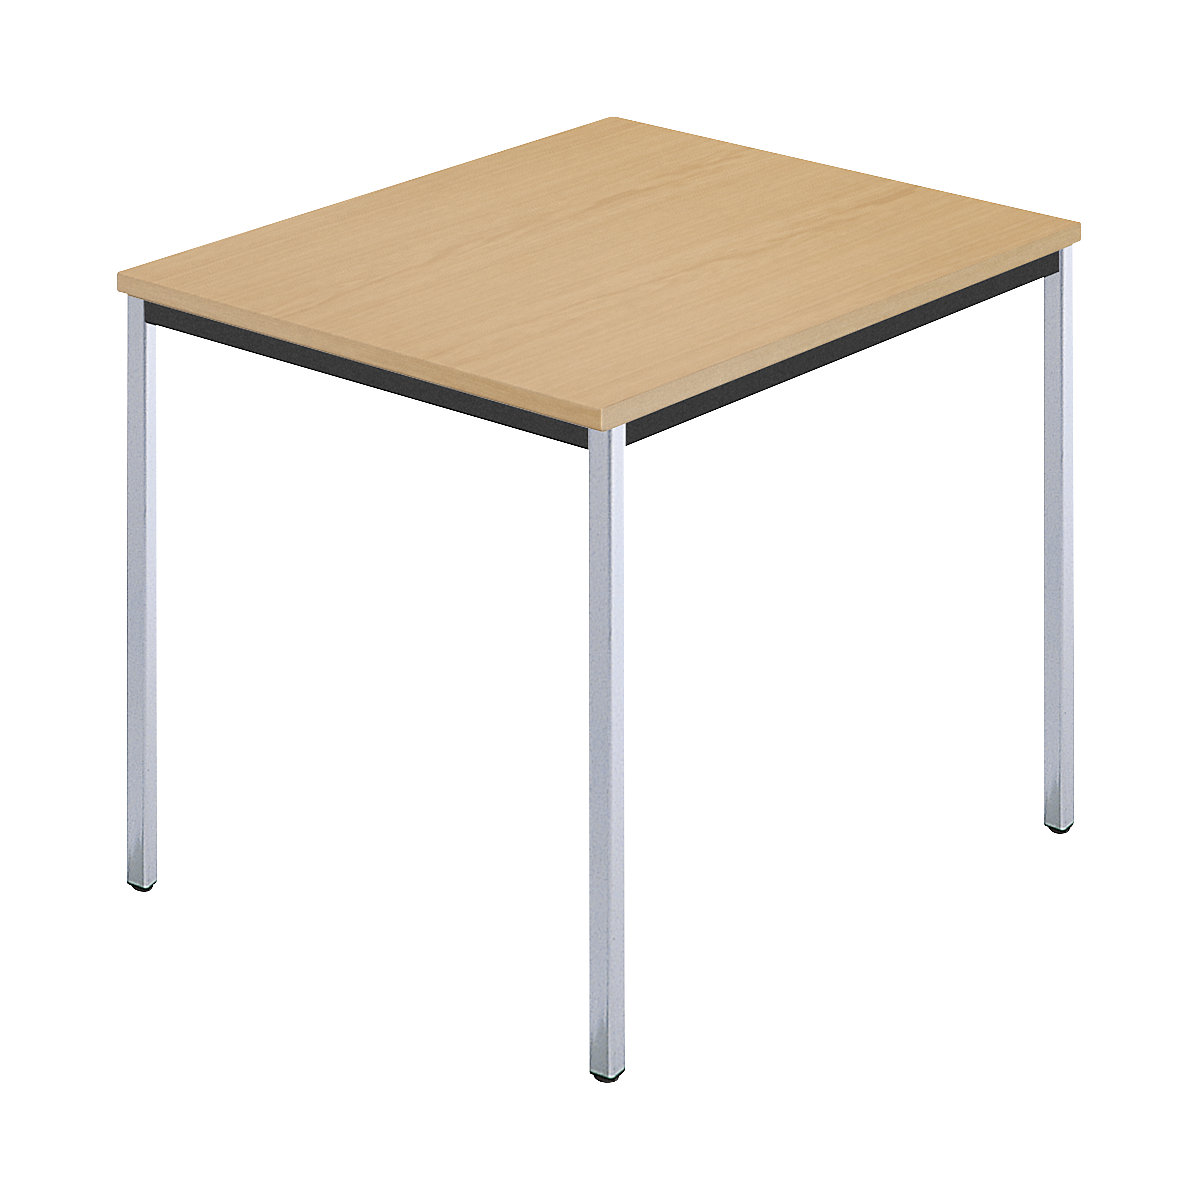 Rechthoekige tafel, met vierkante, verchroomde tafelpoten, b x d = 800 x 800 mm, naturel beukenhout-5